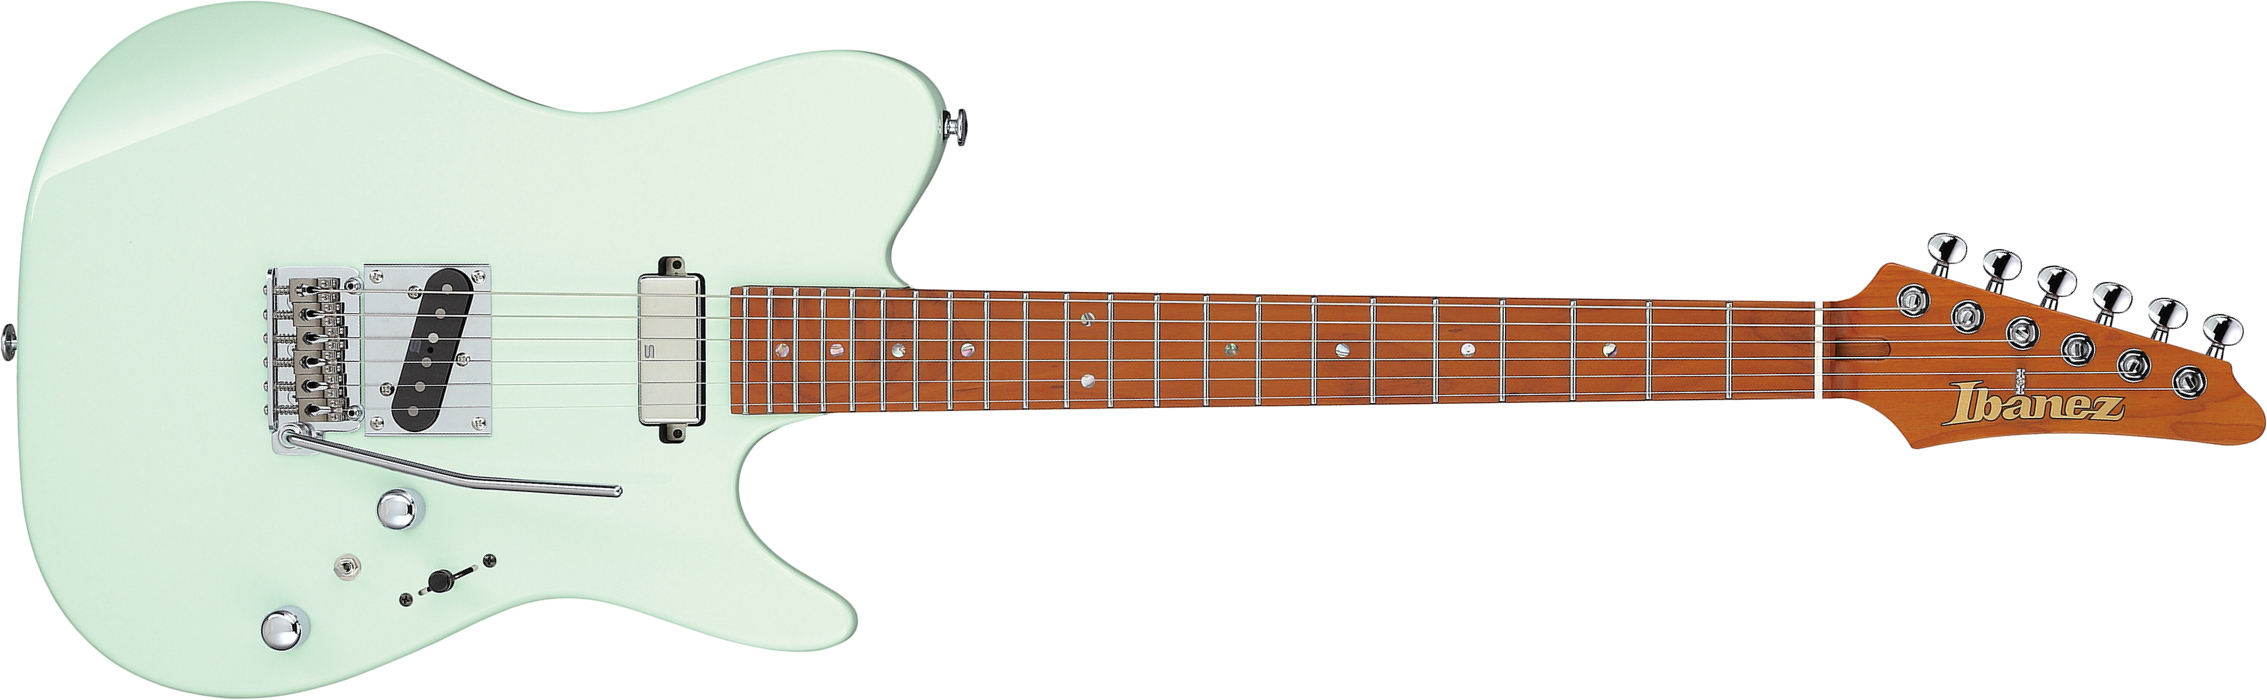 Ibanez Azs2200 Mgr Prestige Jap Smh Seymour Duncan Trem Mn - Mint Green - Guitarra eléctrica con forma de tel - Main picture